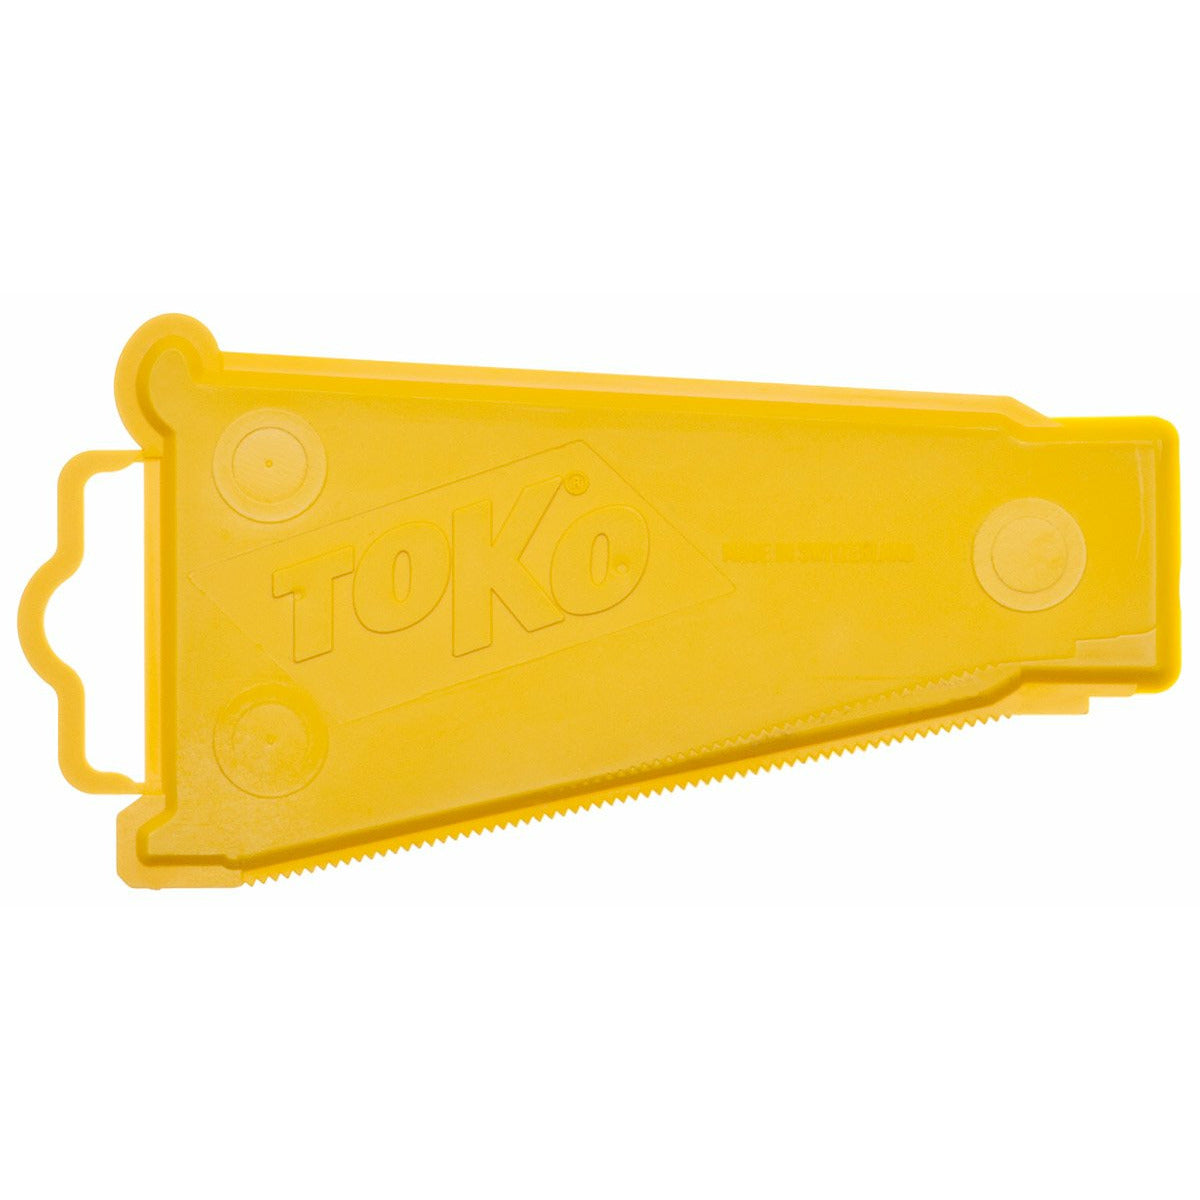 ToKo Multi-Purpose Scraper